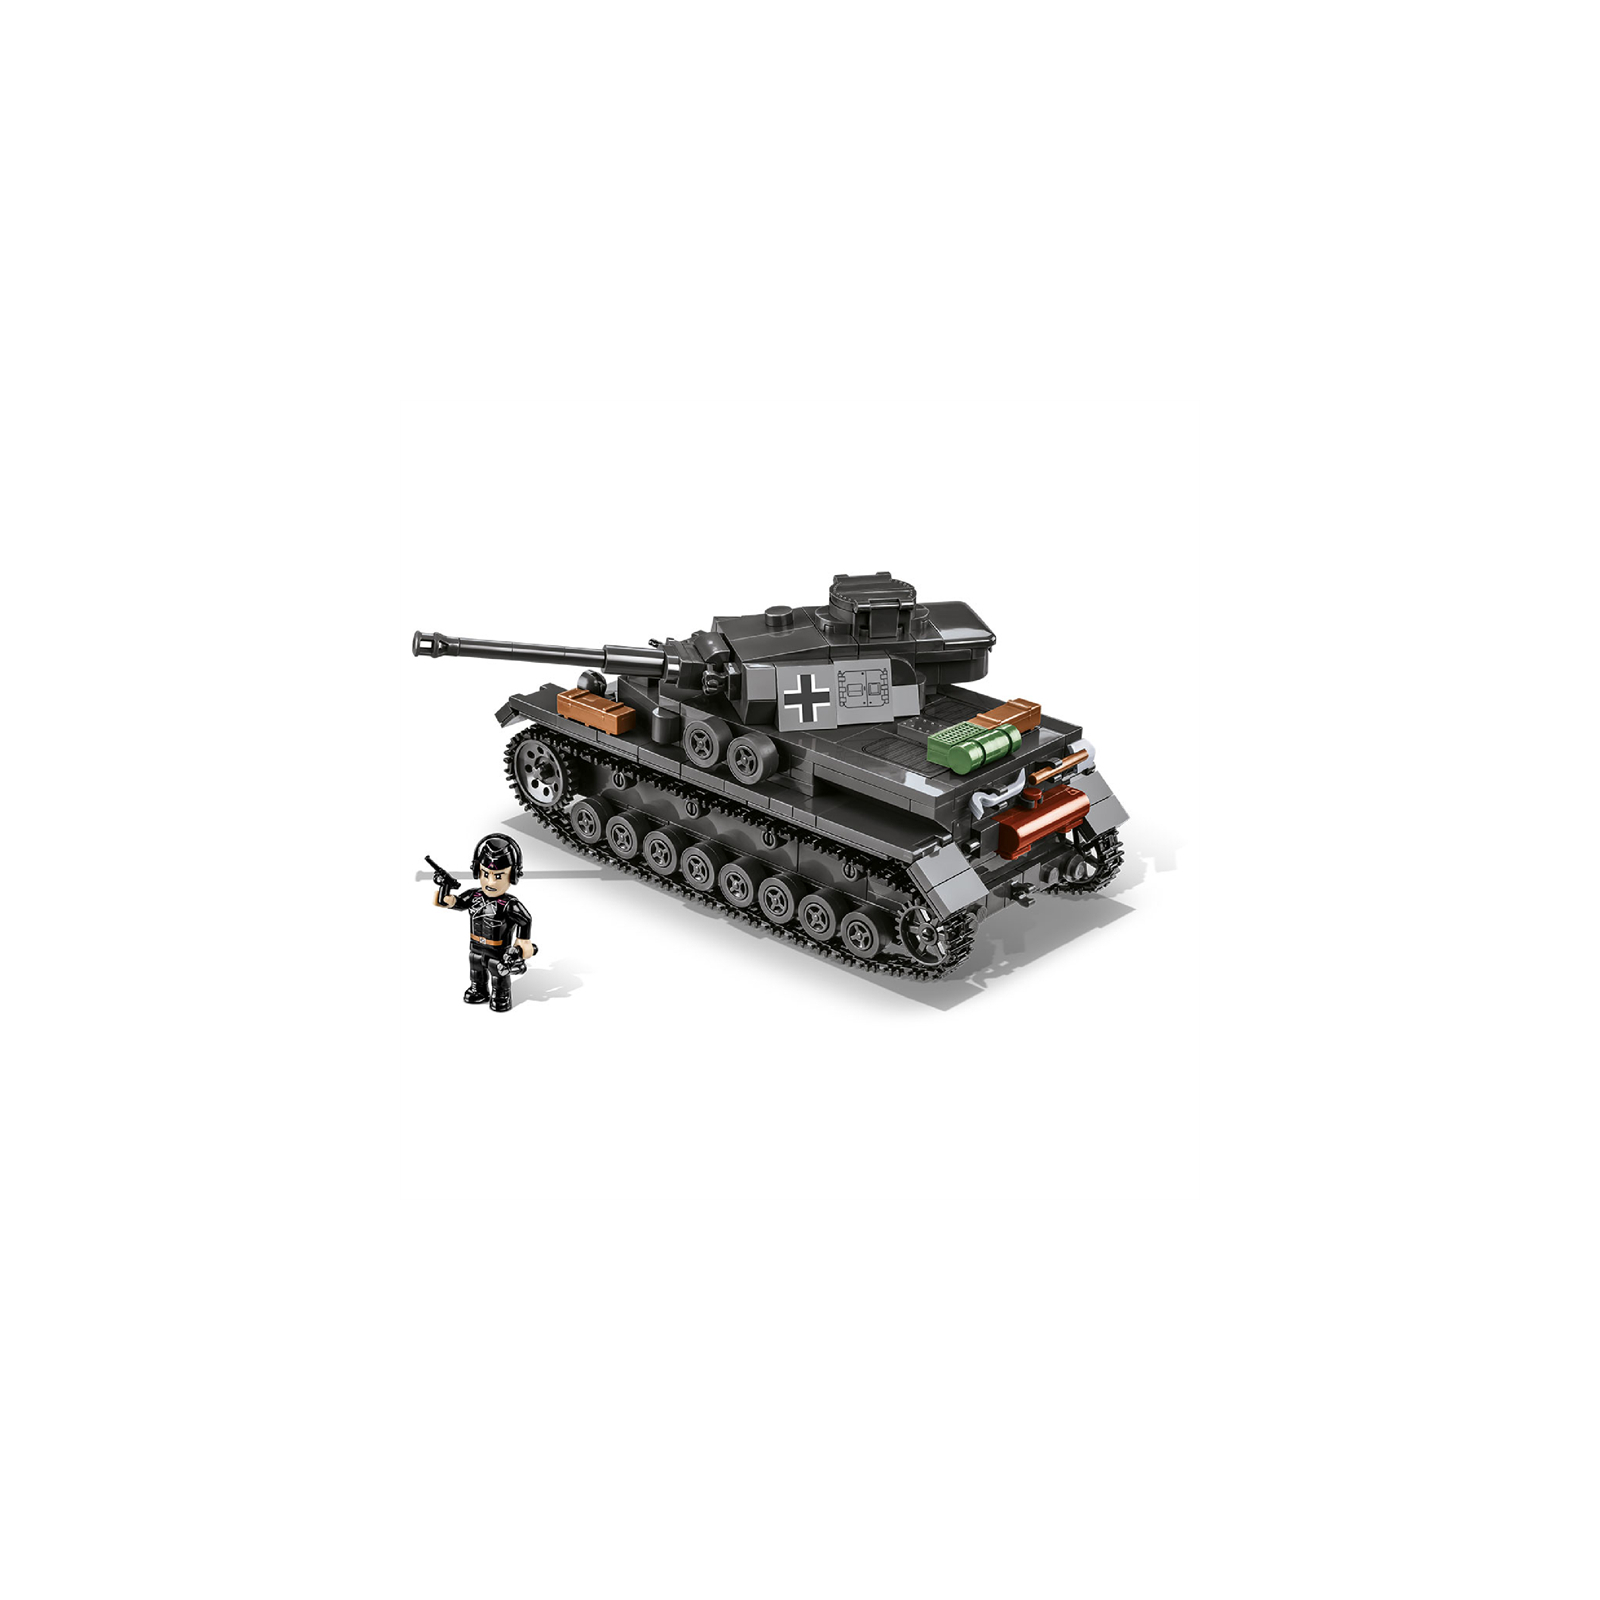 Конструктор Cobi Company of Heroes 3 Танк Panzer IV, 610 деталей (COBI-3045) изображение 10